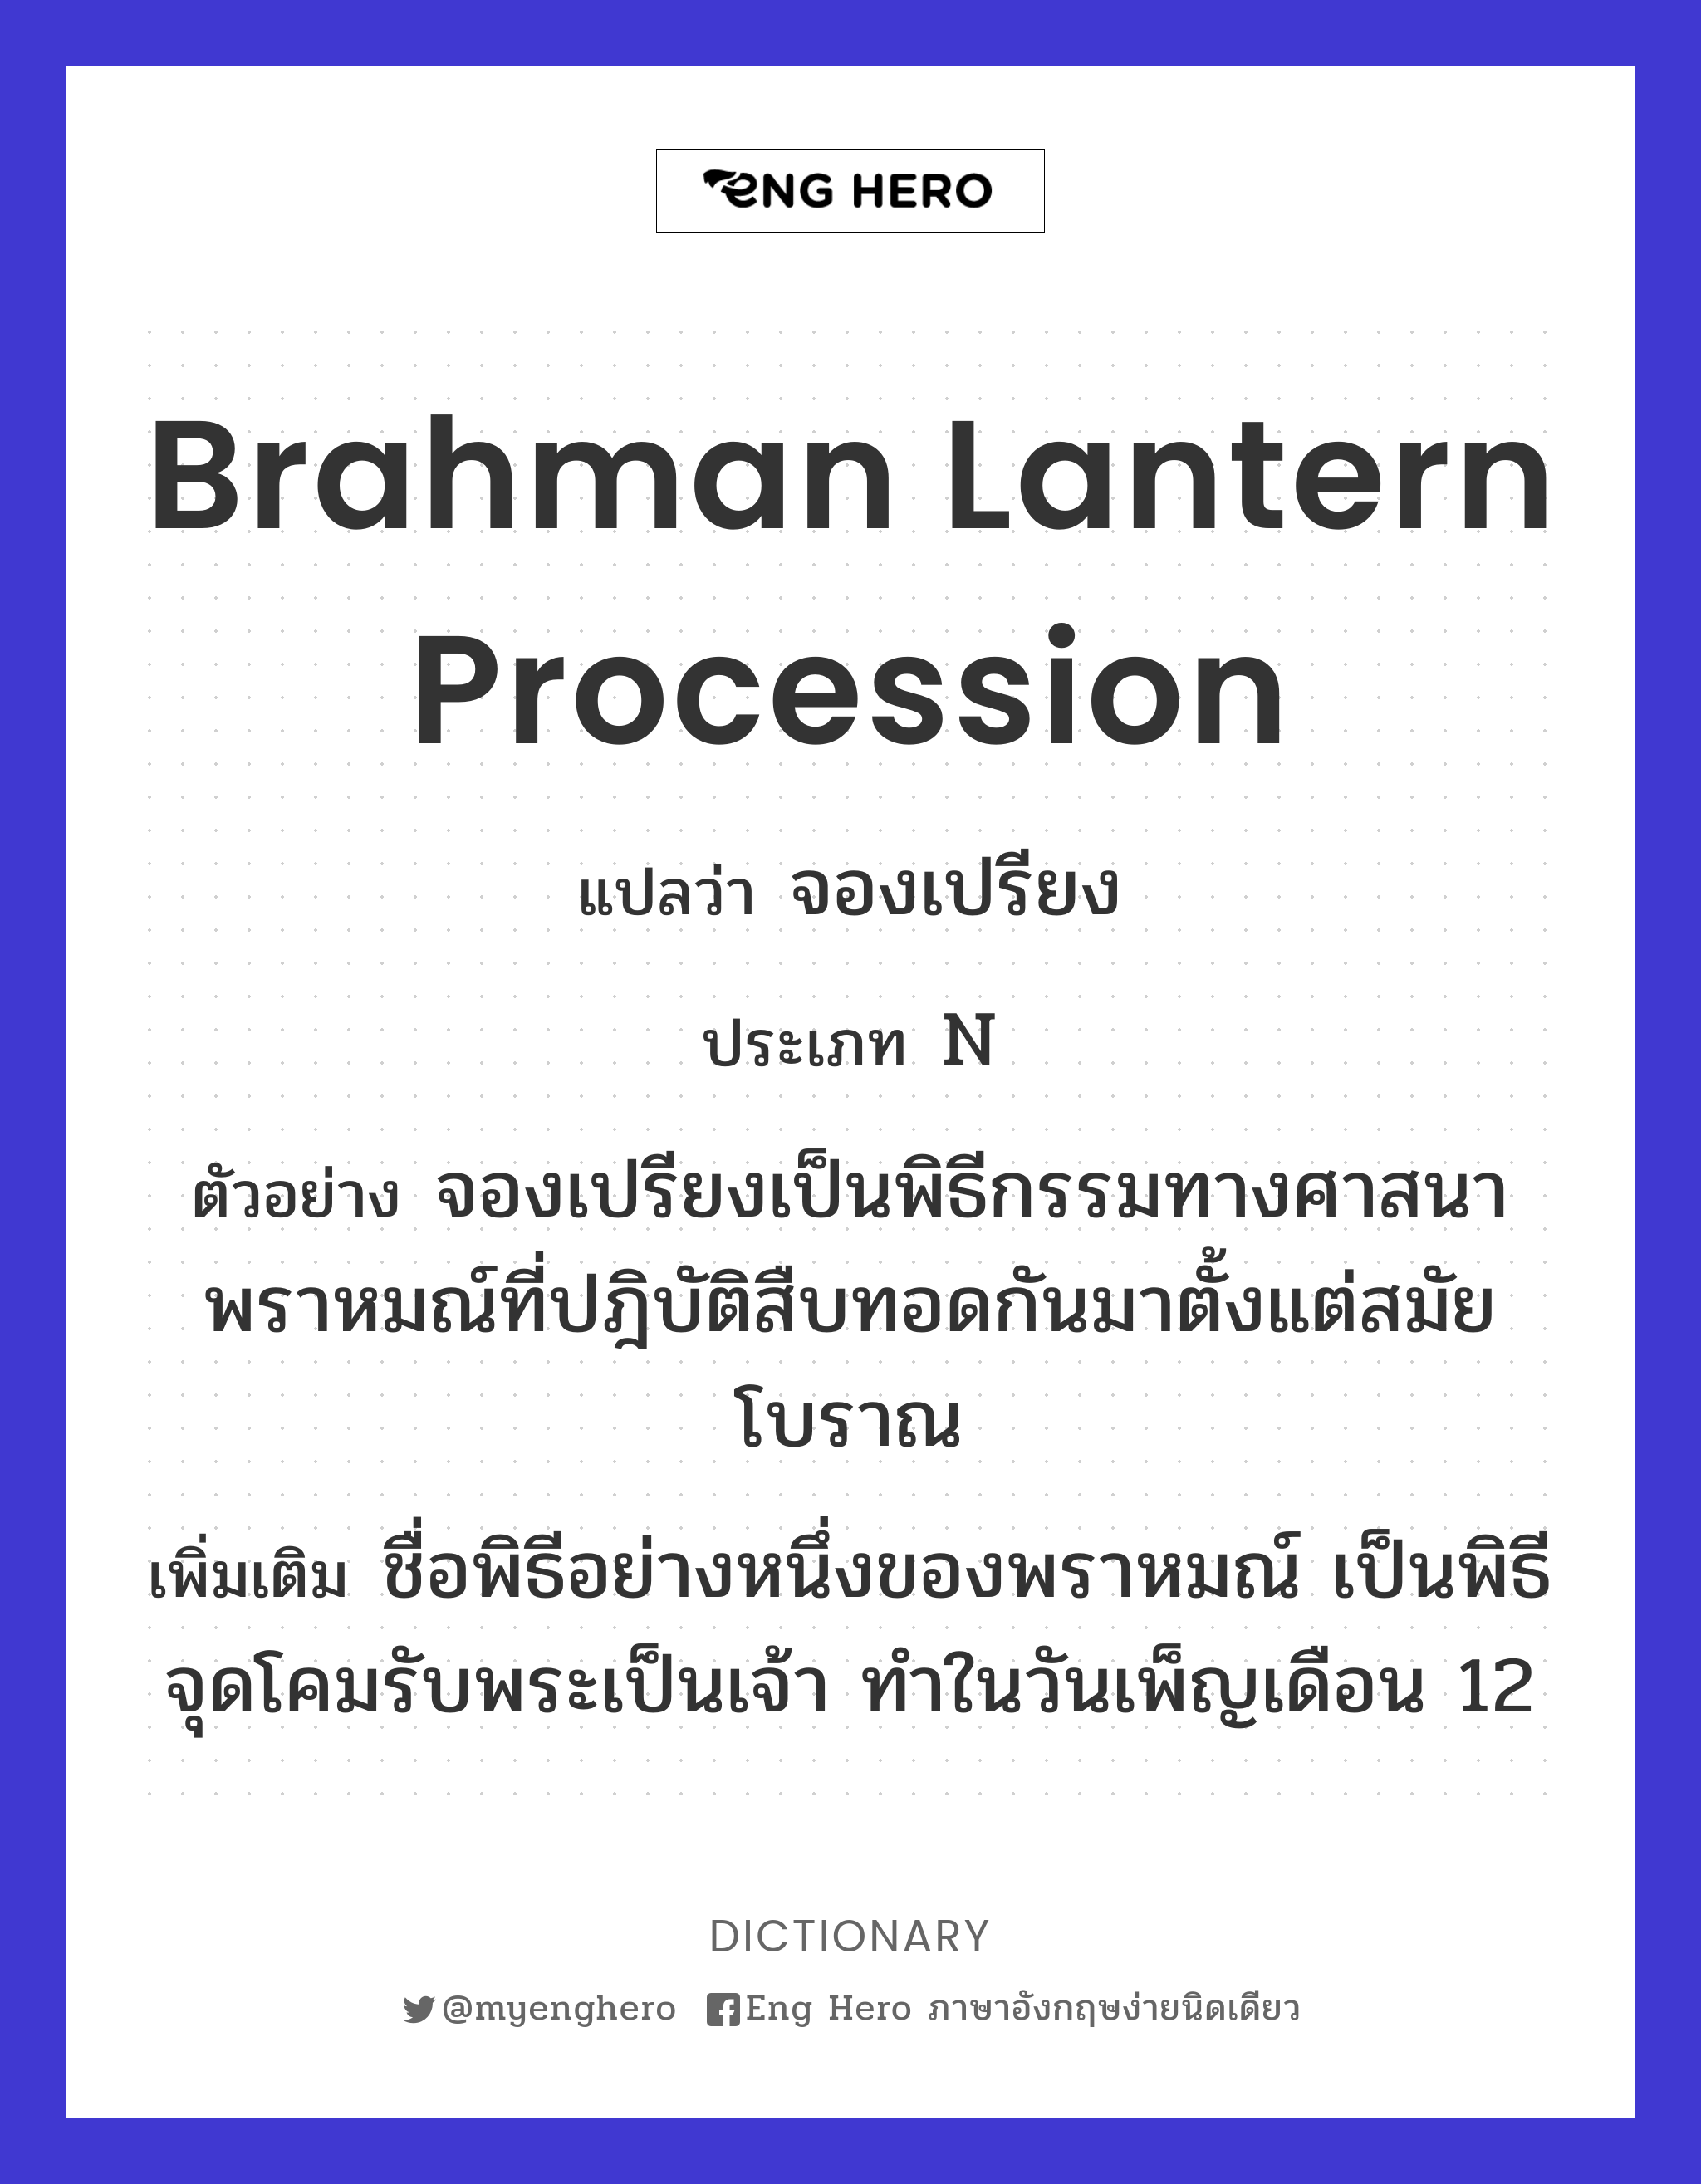 Brahman lantern procession